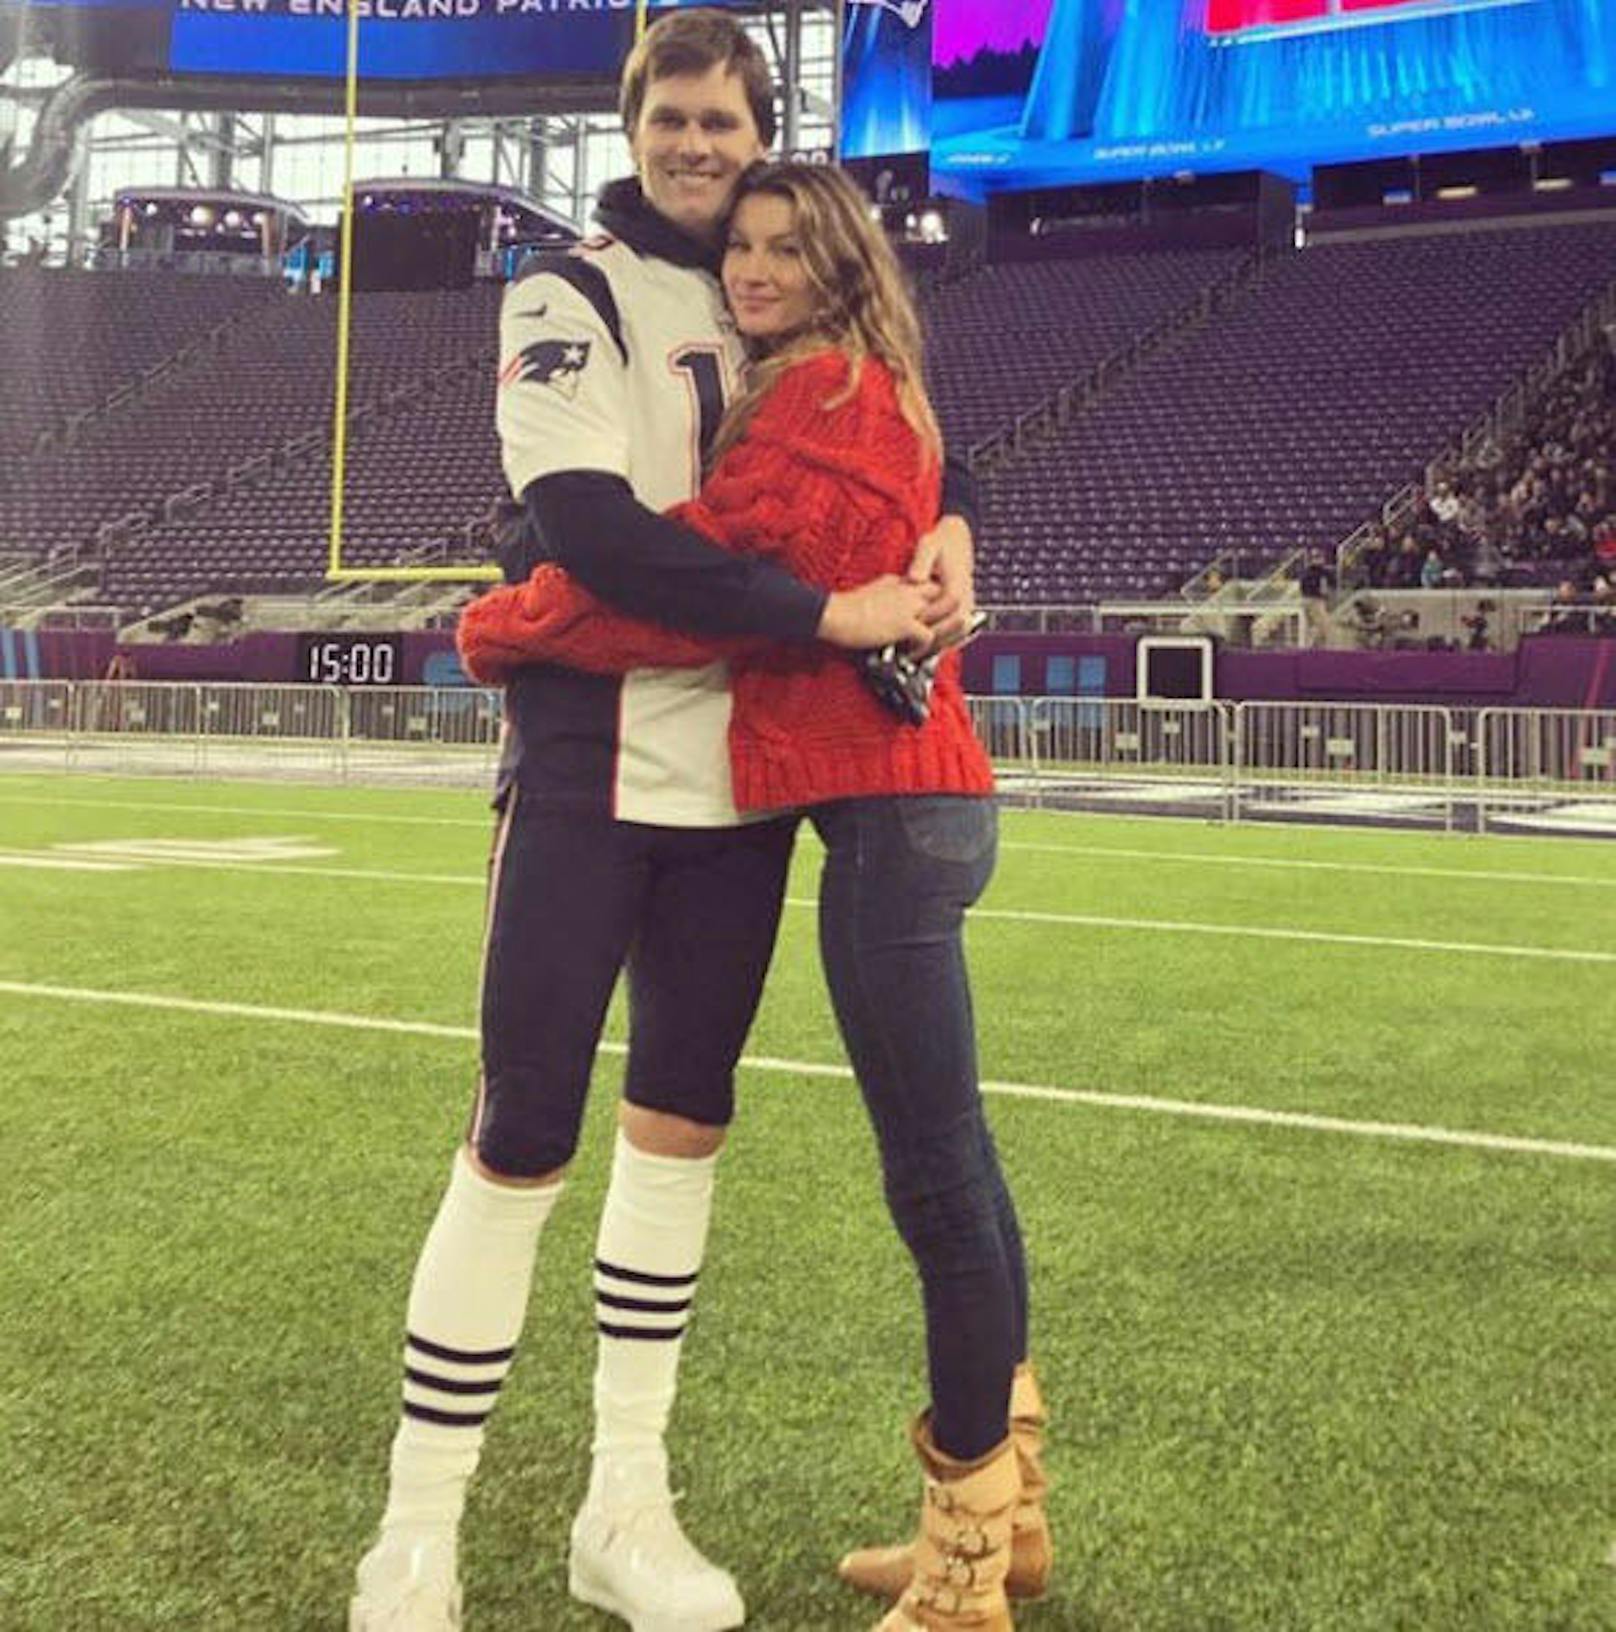 04.02.2018: Gisele Bündchen steht ihrem Gatten Tom Brady vor dem Super Bowl auf Instagram bei. 